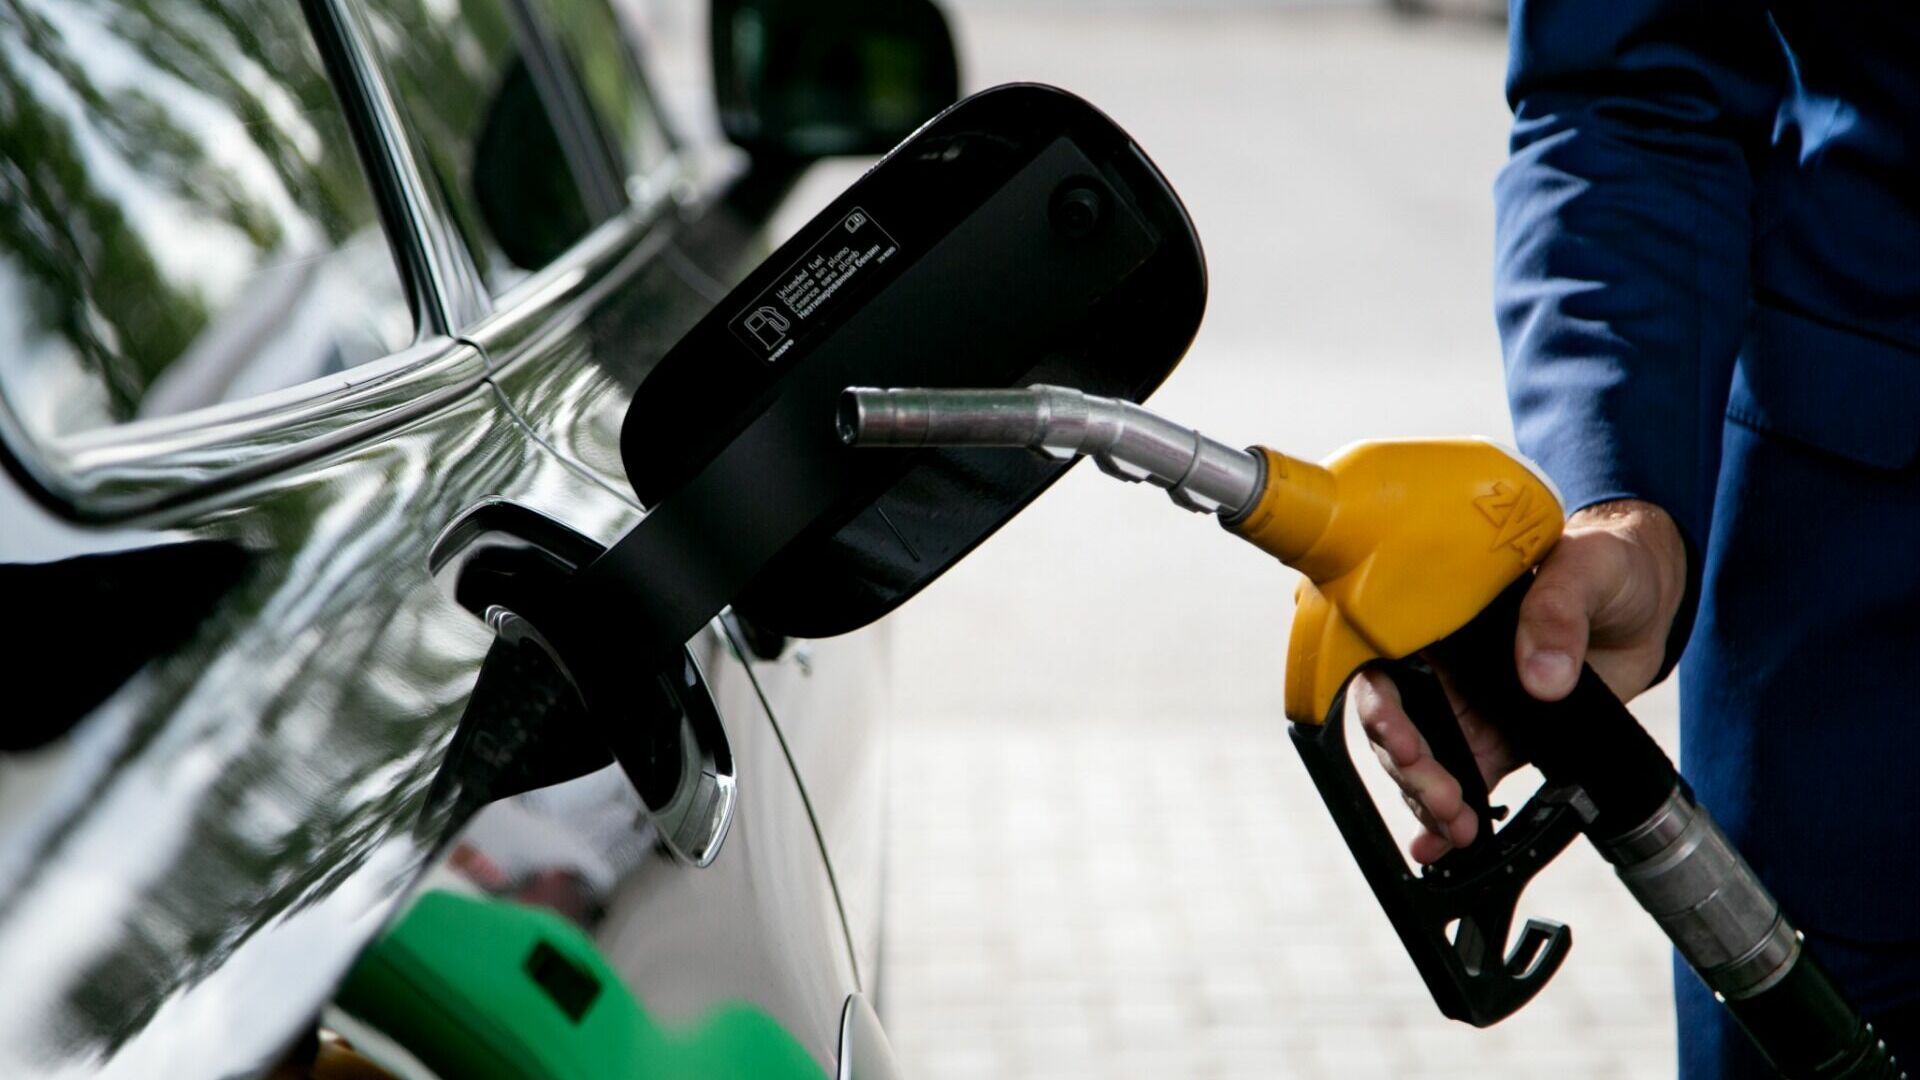 Цены на бензин сравнили на Украине и в Ростовской области